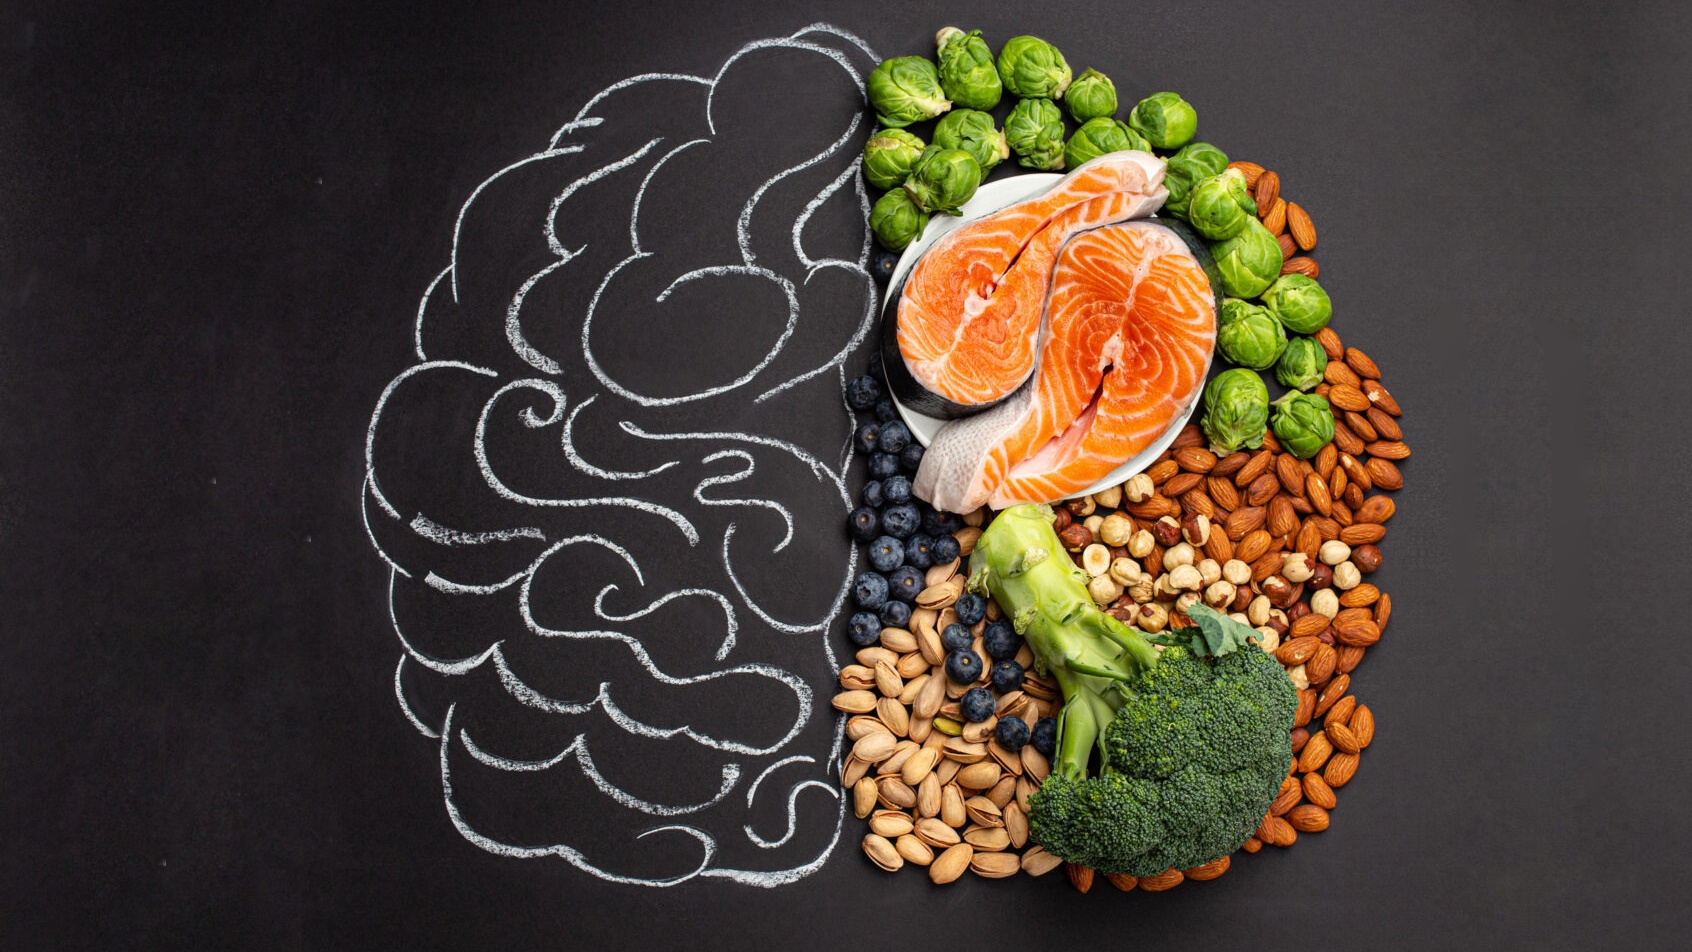 Xây dựng một chế độ ăn uống hợp lý, khoa học là cách cải thiện trí nhớ hiệu quả